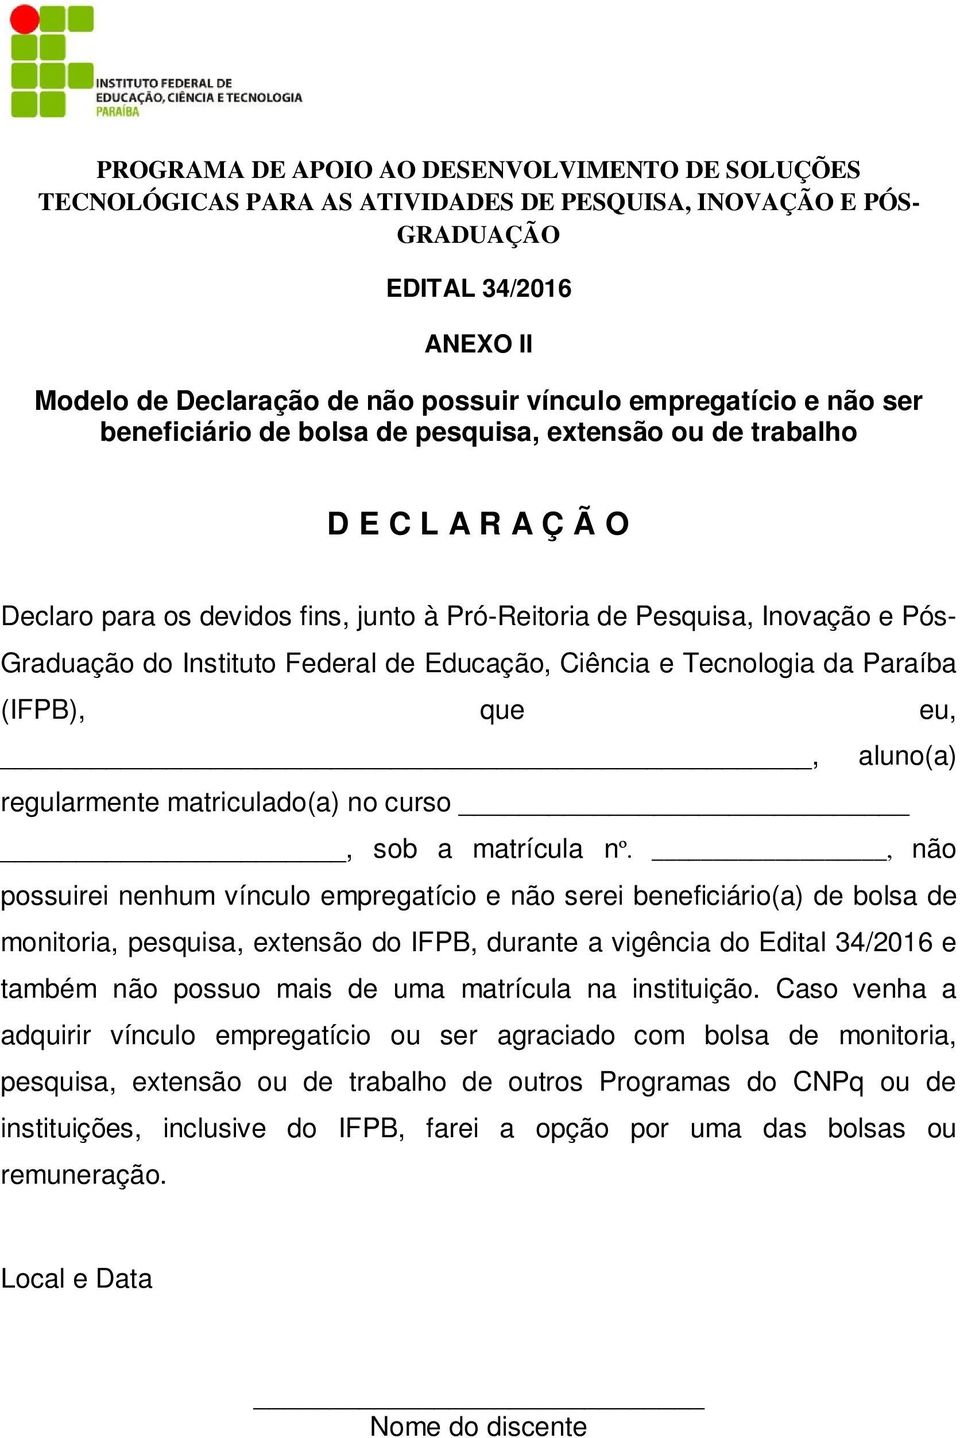 Instituto Federal de Educação, Ciência e Tecnologia da Paraíba (IFPB), que eu,, aluno(a) regularmente matriculado(a) no curso, sob a matrícula nº.